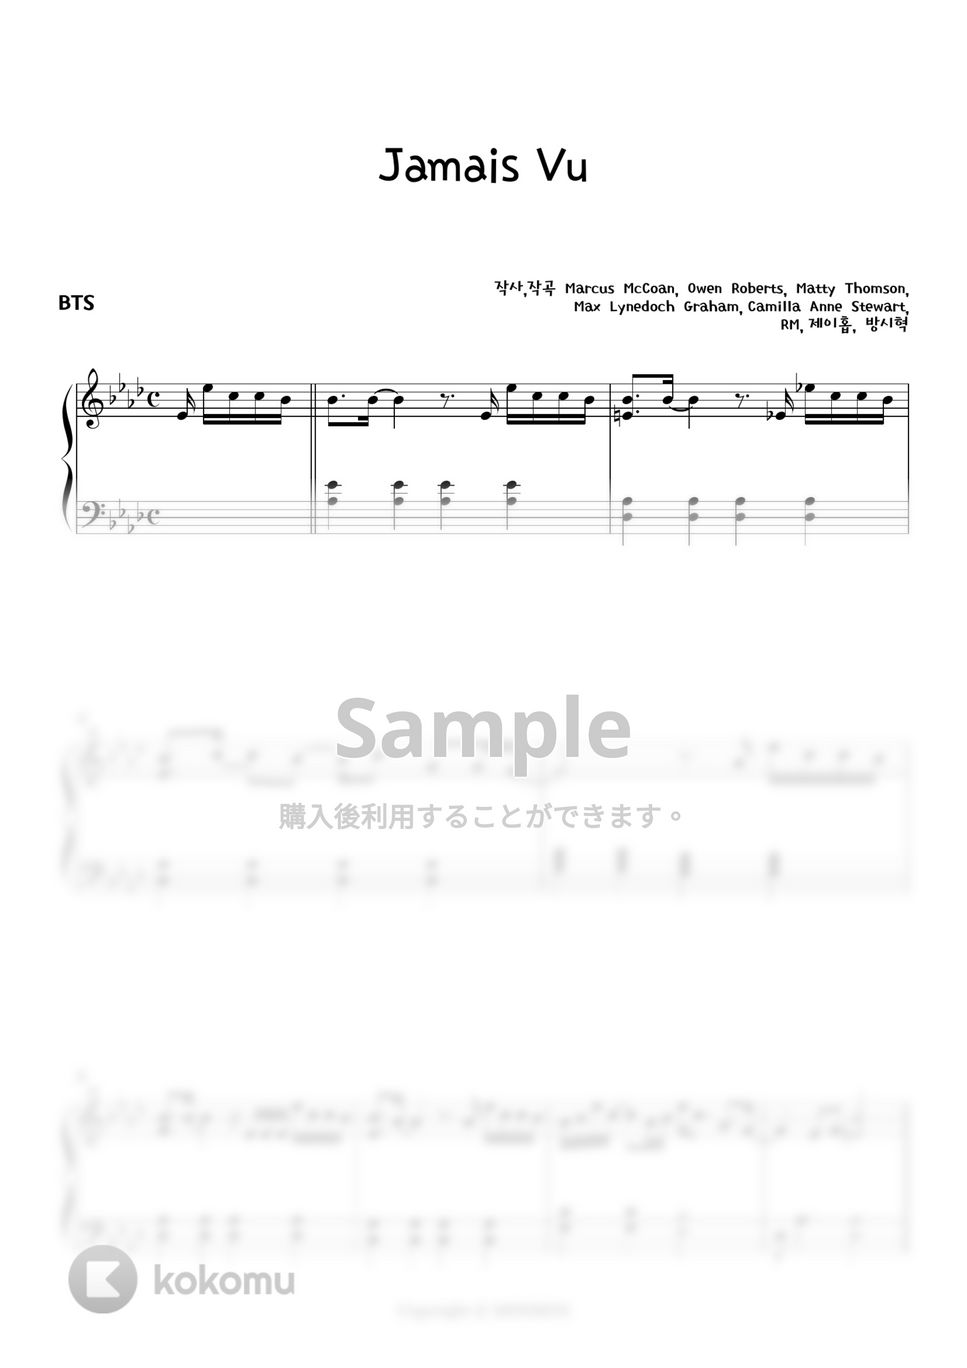 防弾少年団 (BTS) - Jamais Vu (Hard ver.) by MINIBINI